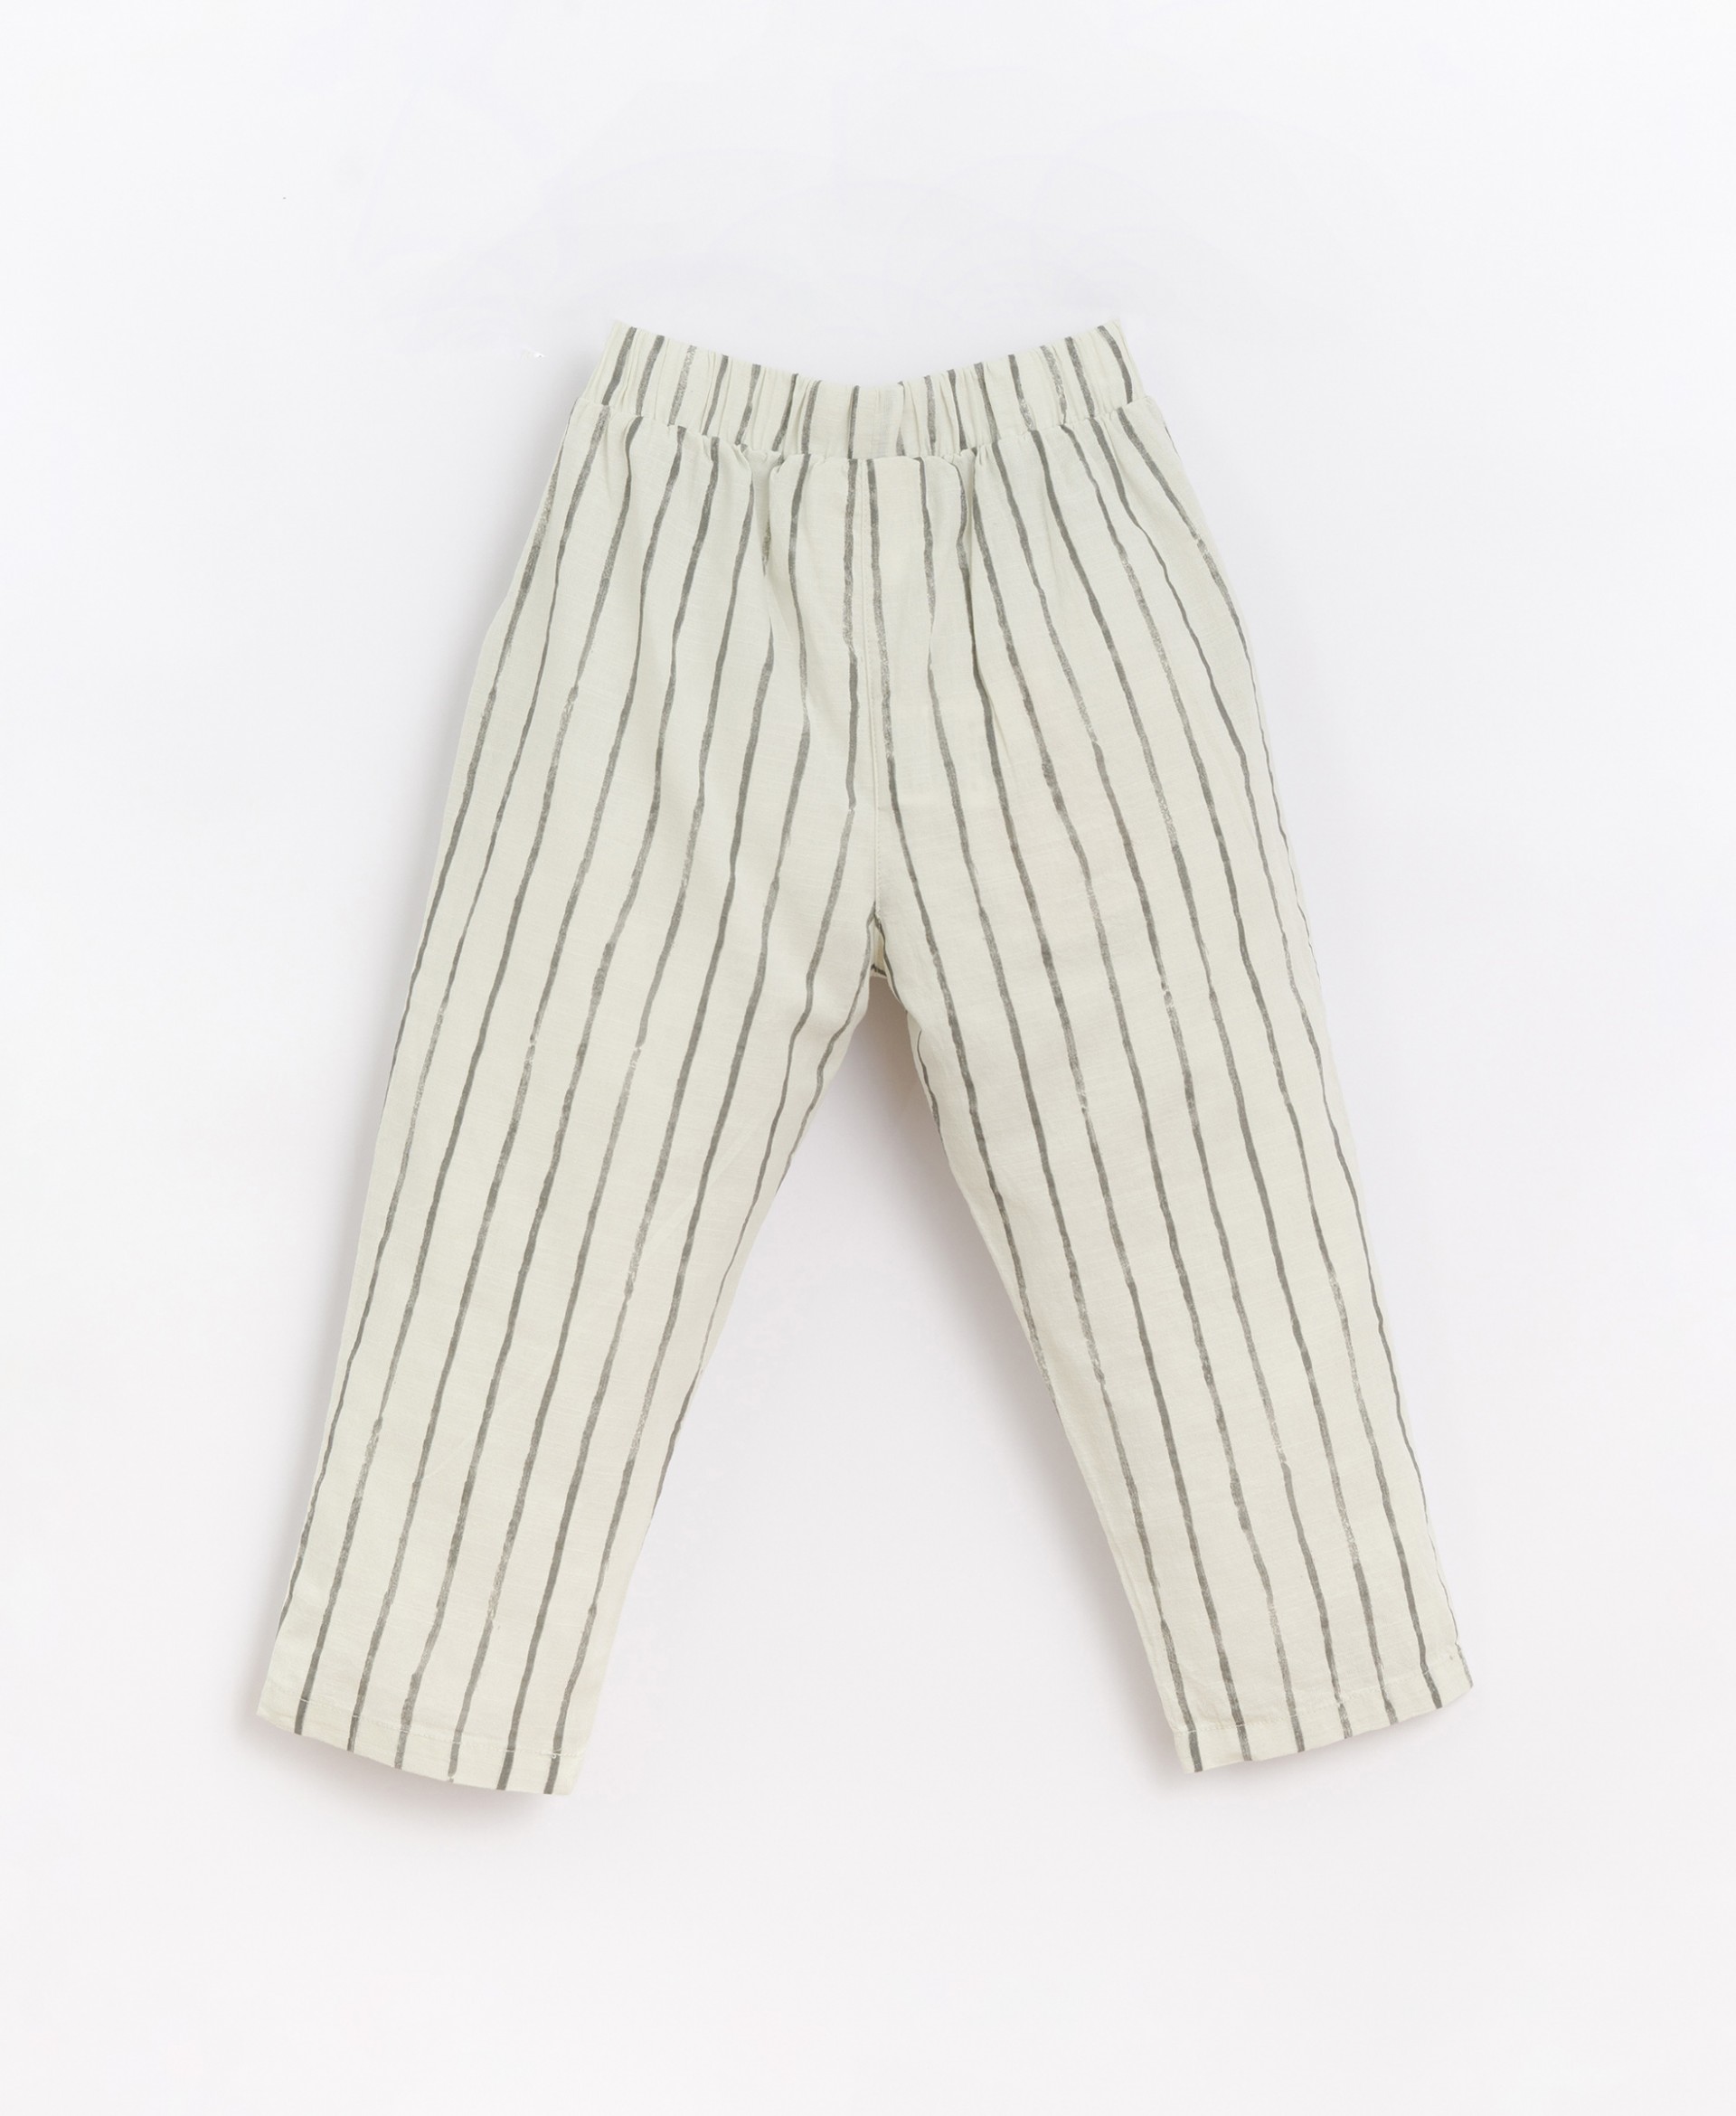 Pantalon en tissu rayé | Basketry